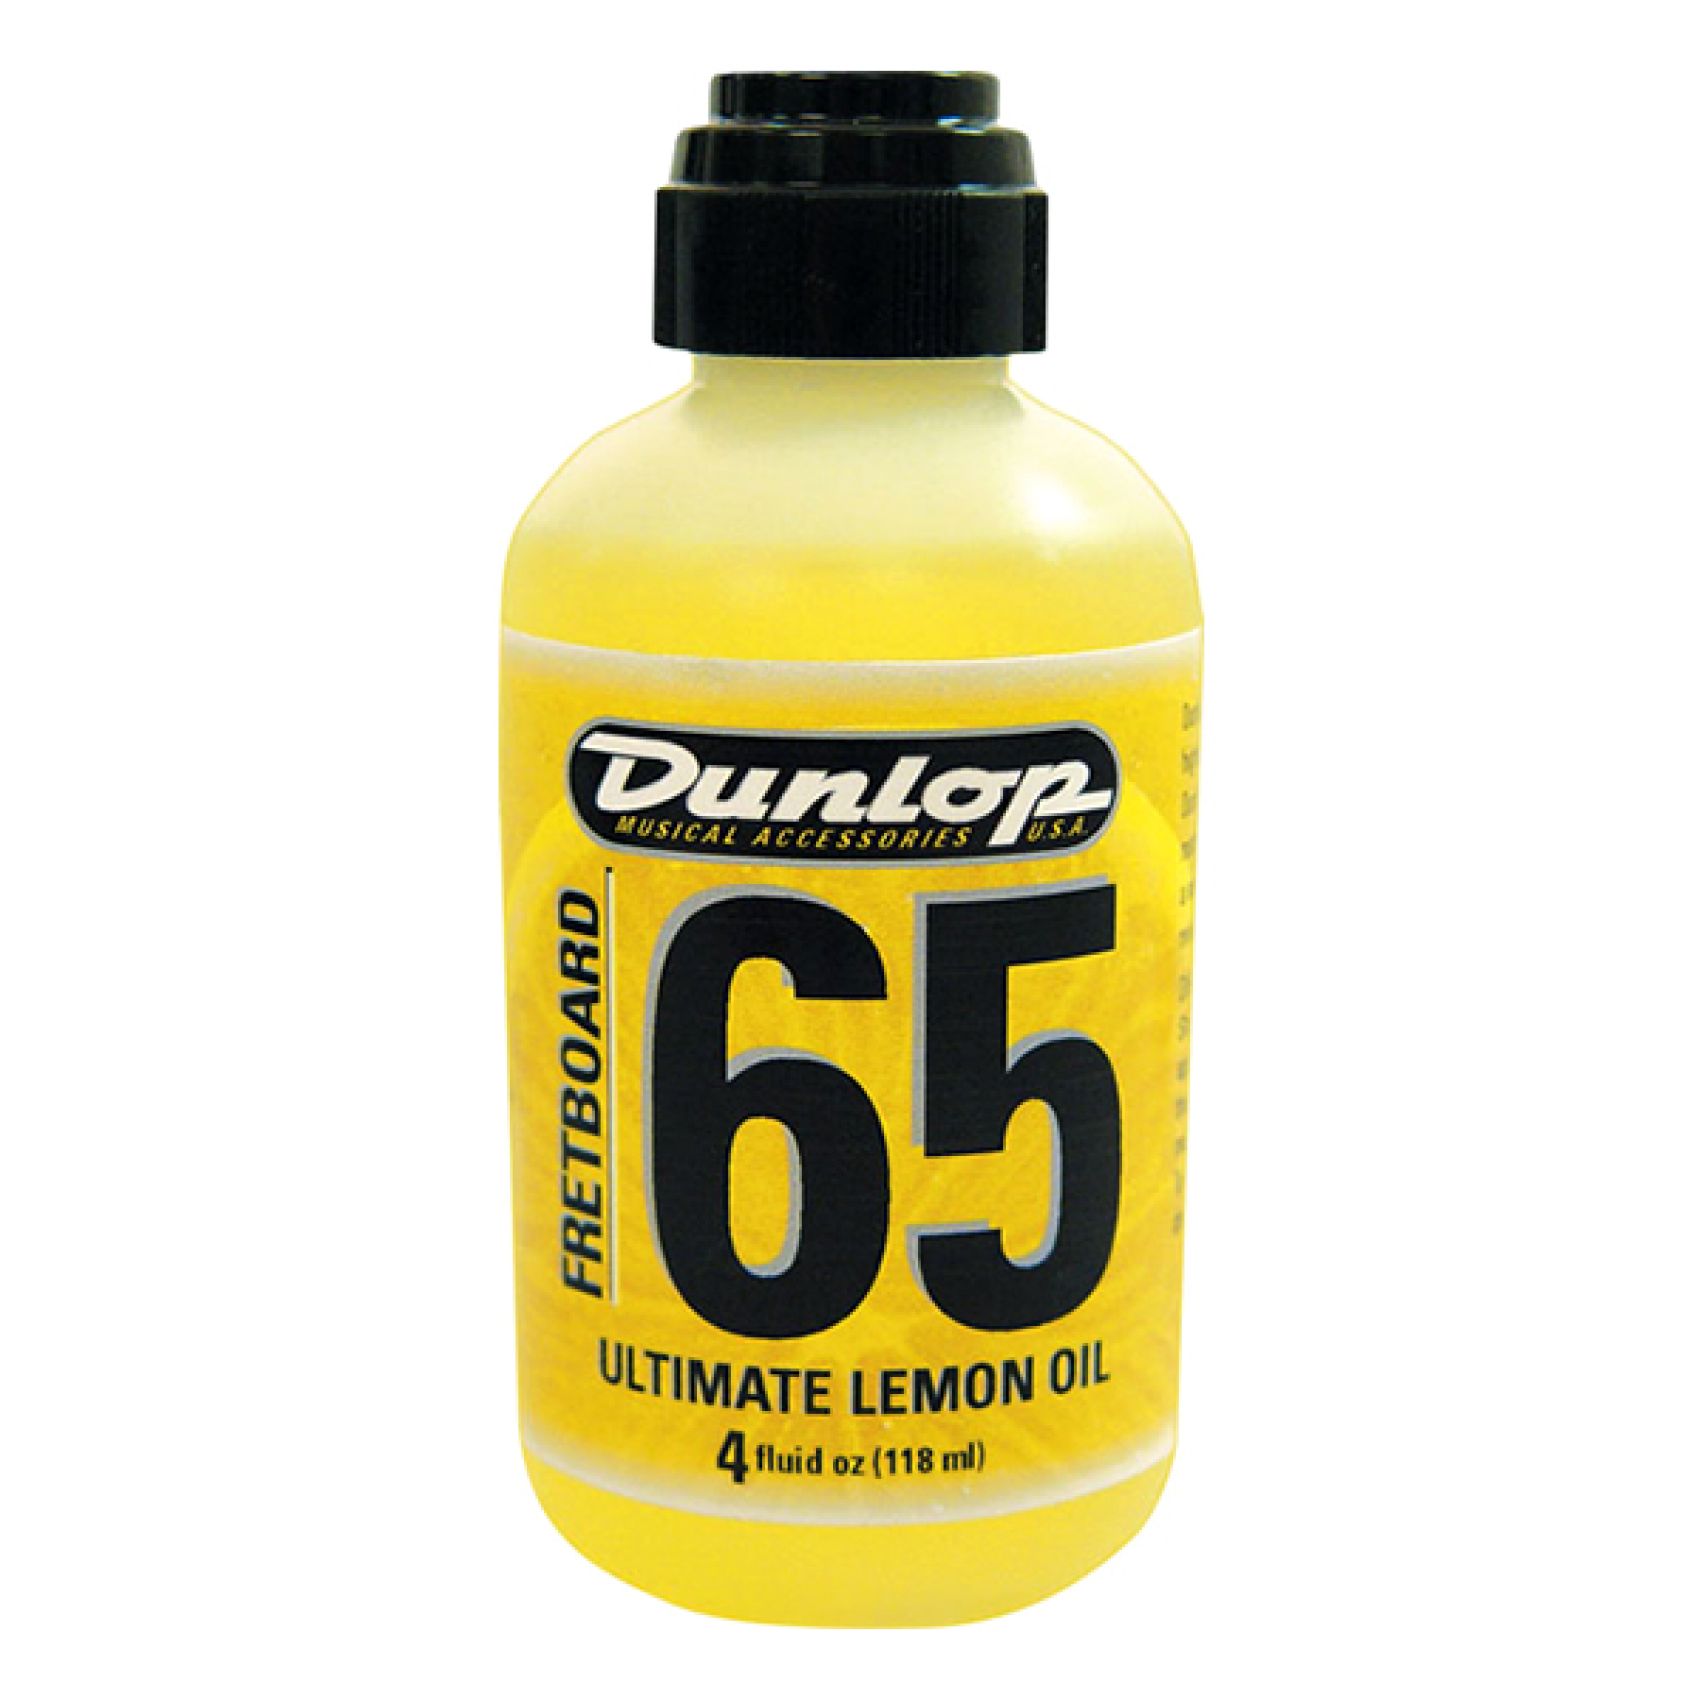 Dunlop 6554 Freatboard 65 Ultimate Lemon Oil